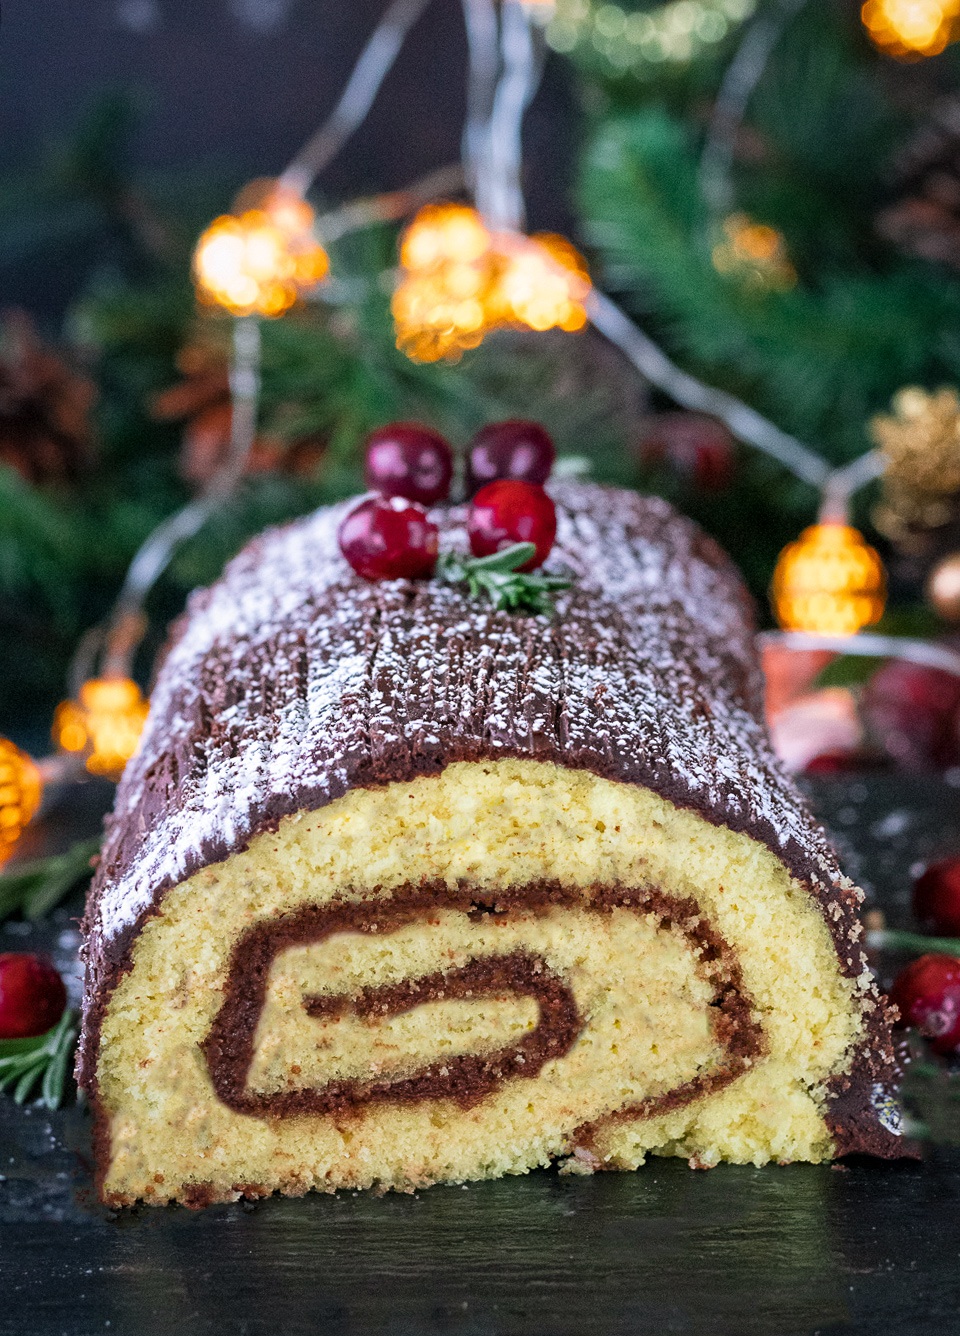 Holiday Yule Log cake